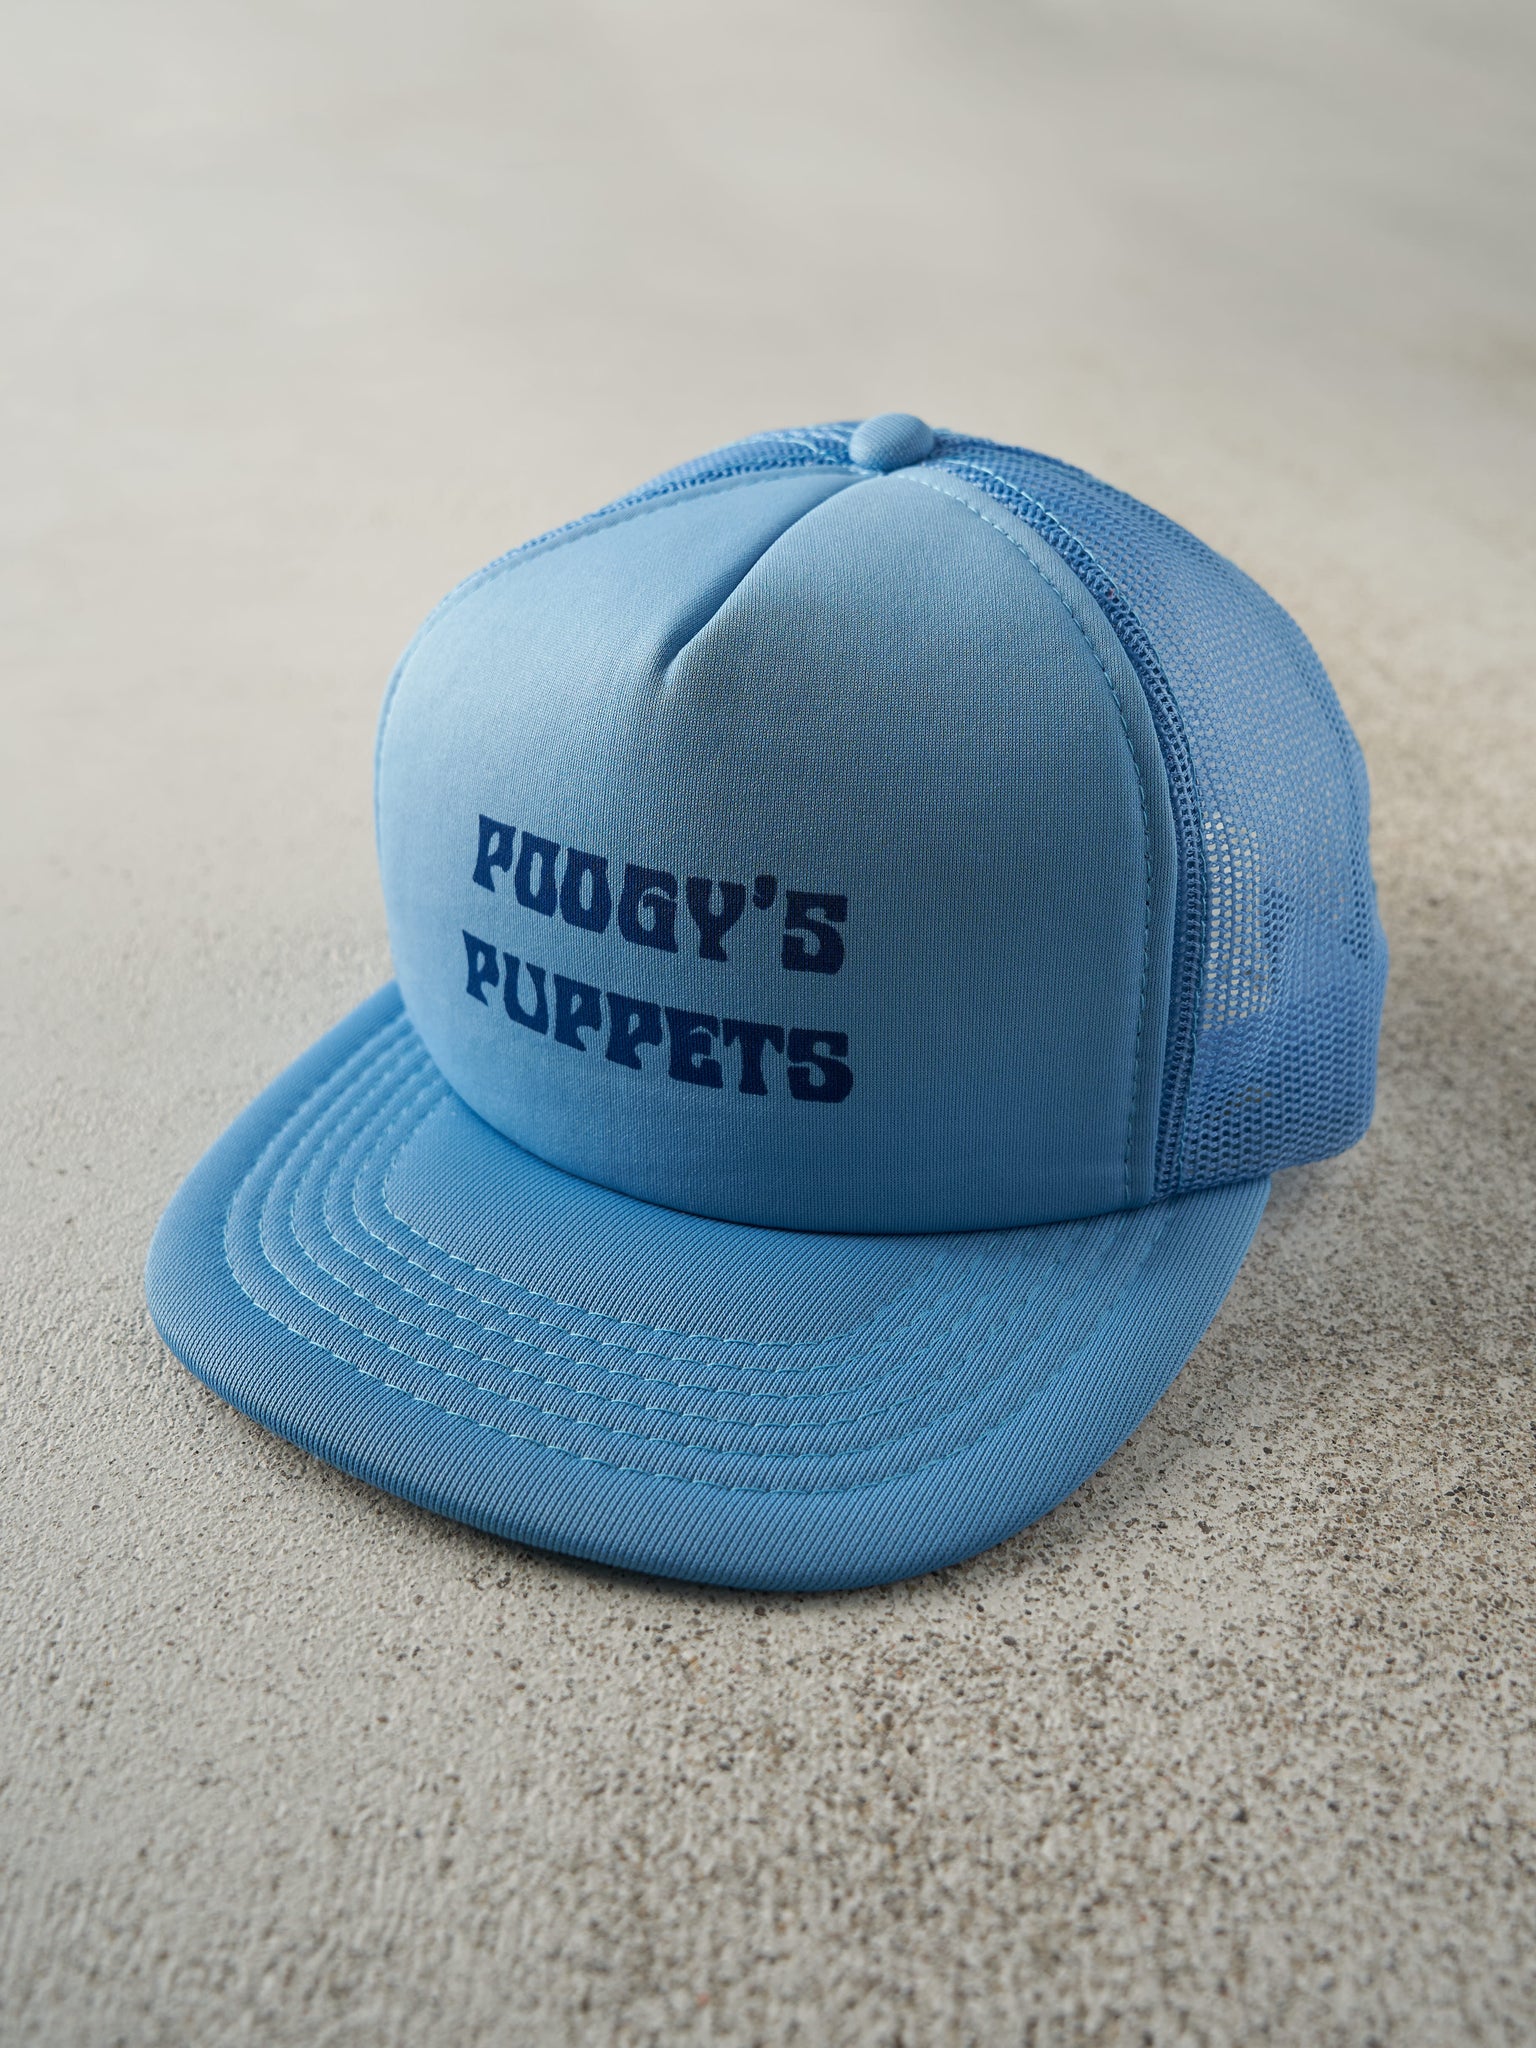 Vintage 80s Blue Poogy's Puppets Foam Trucker Hat